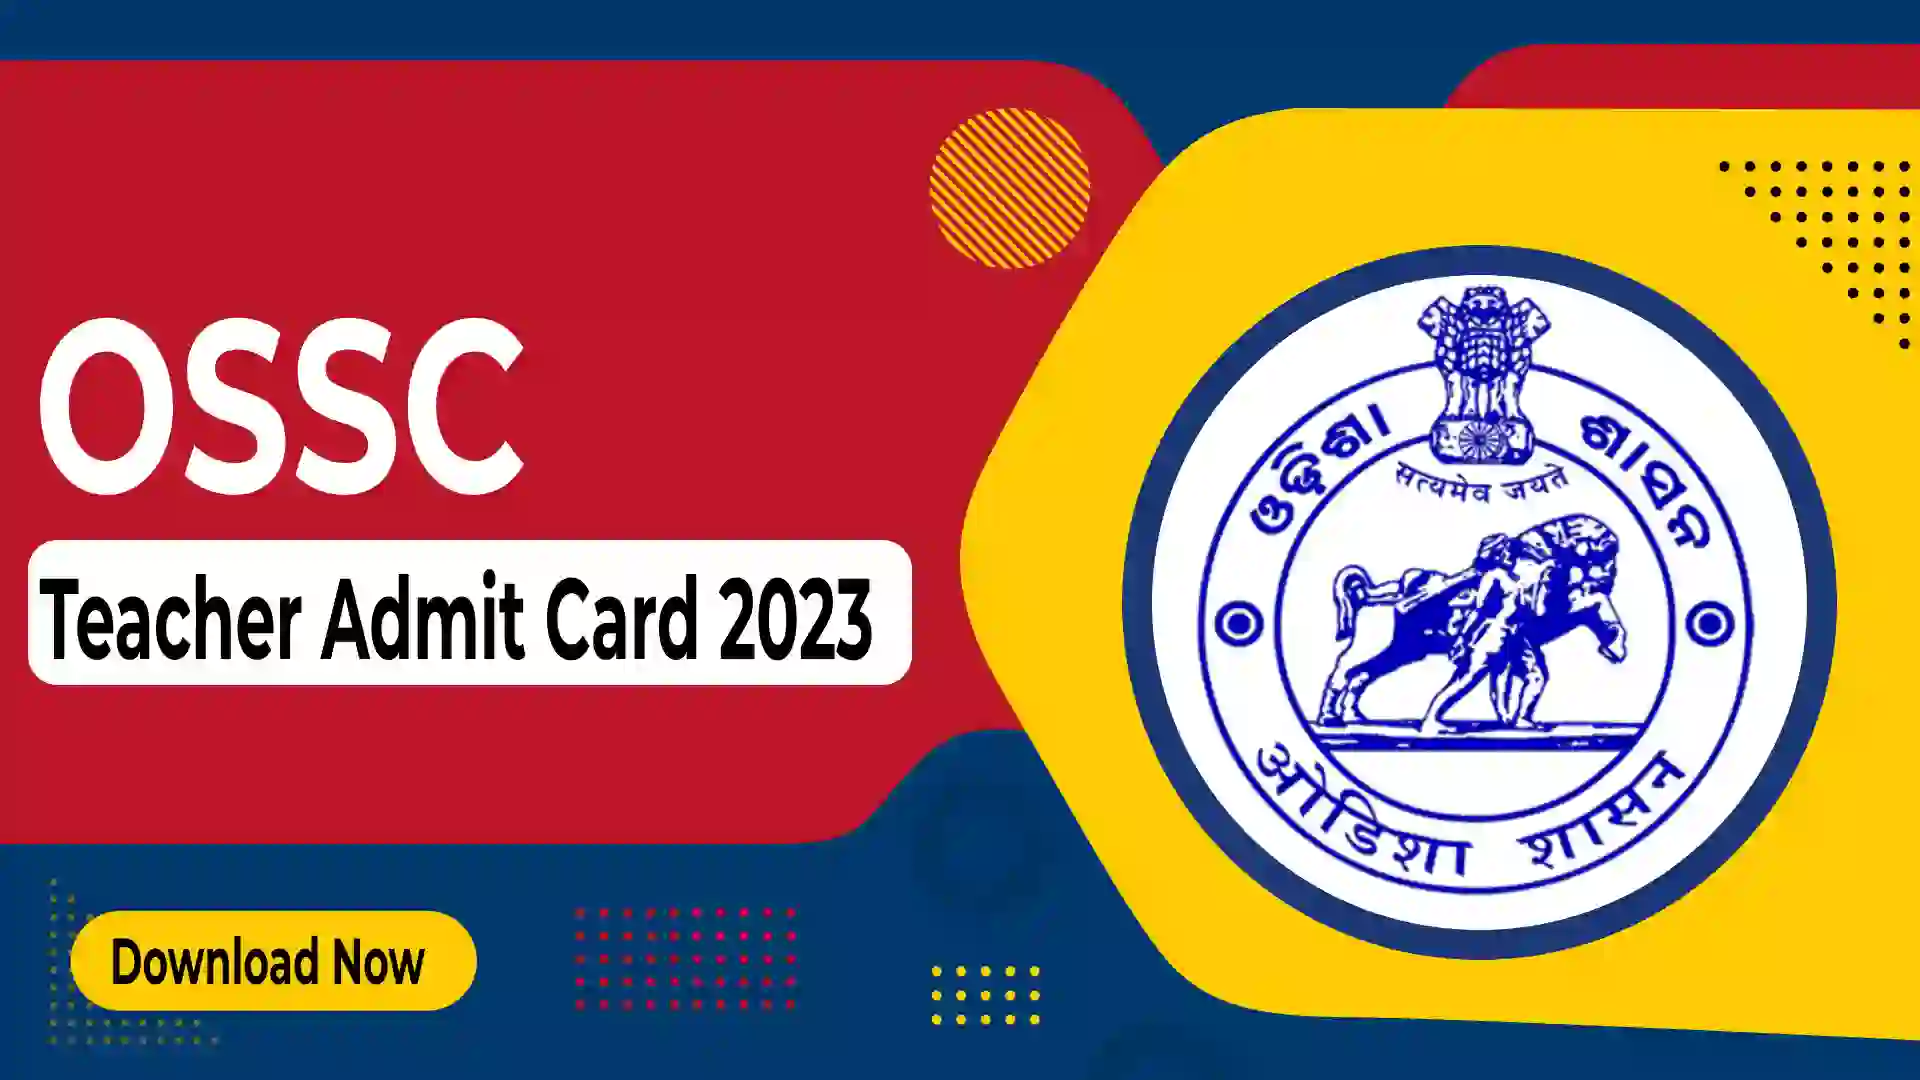 OSSC Teacher Admit Card 2023